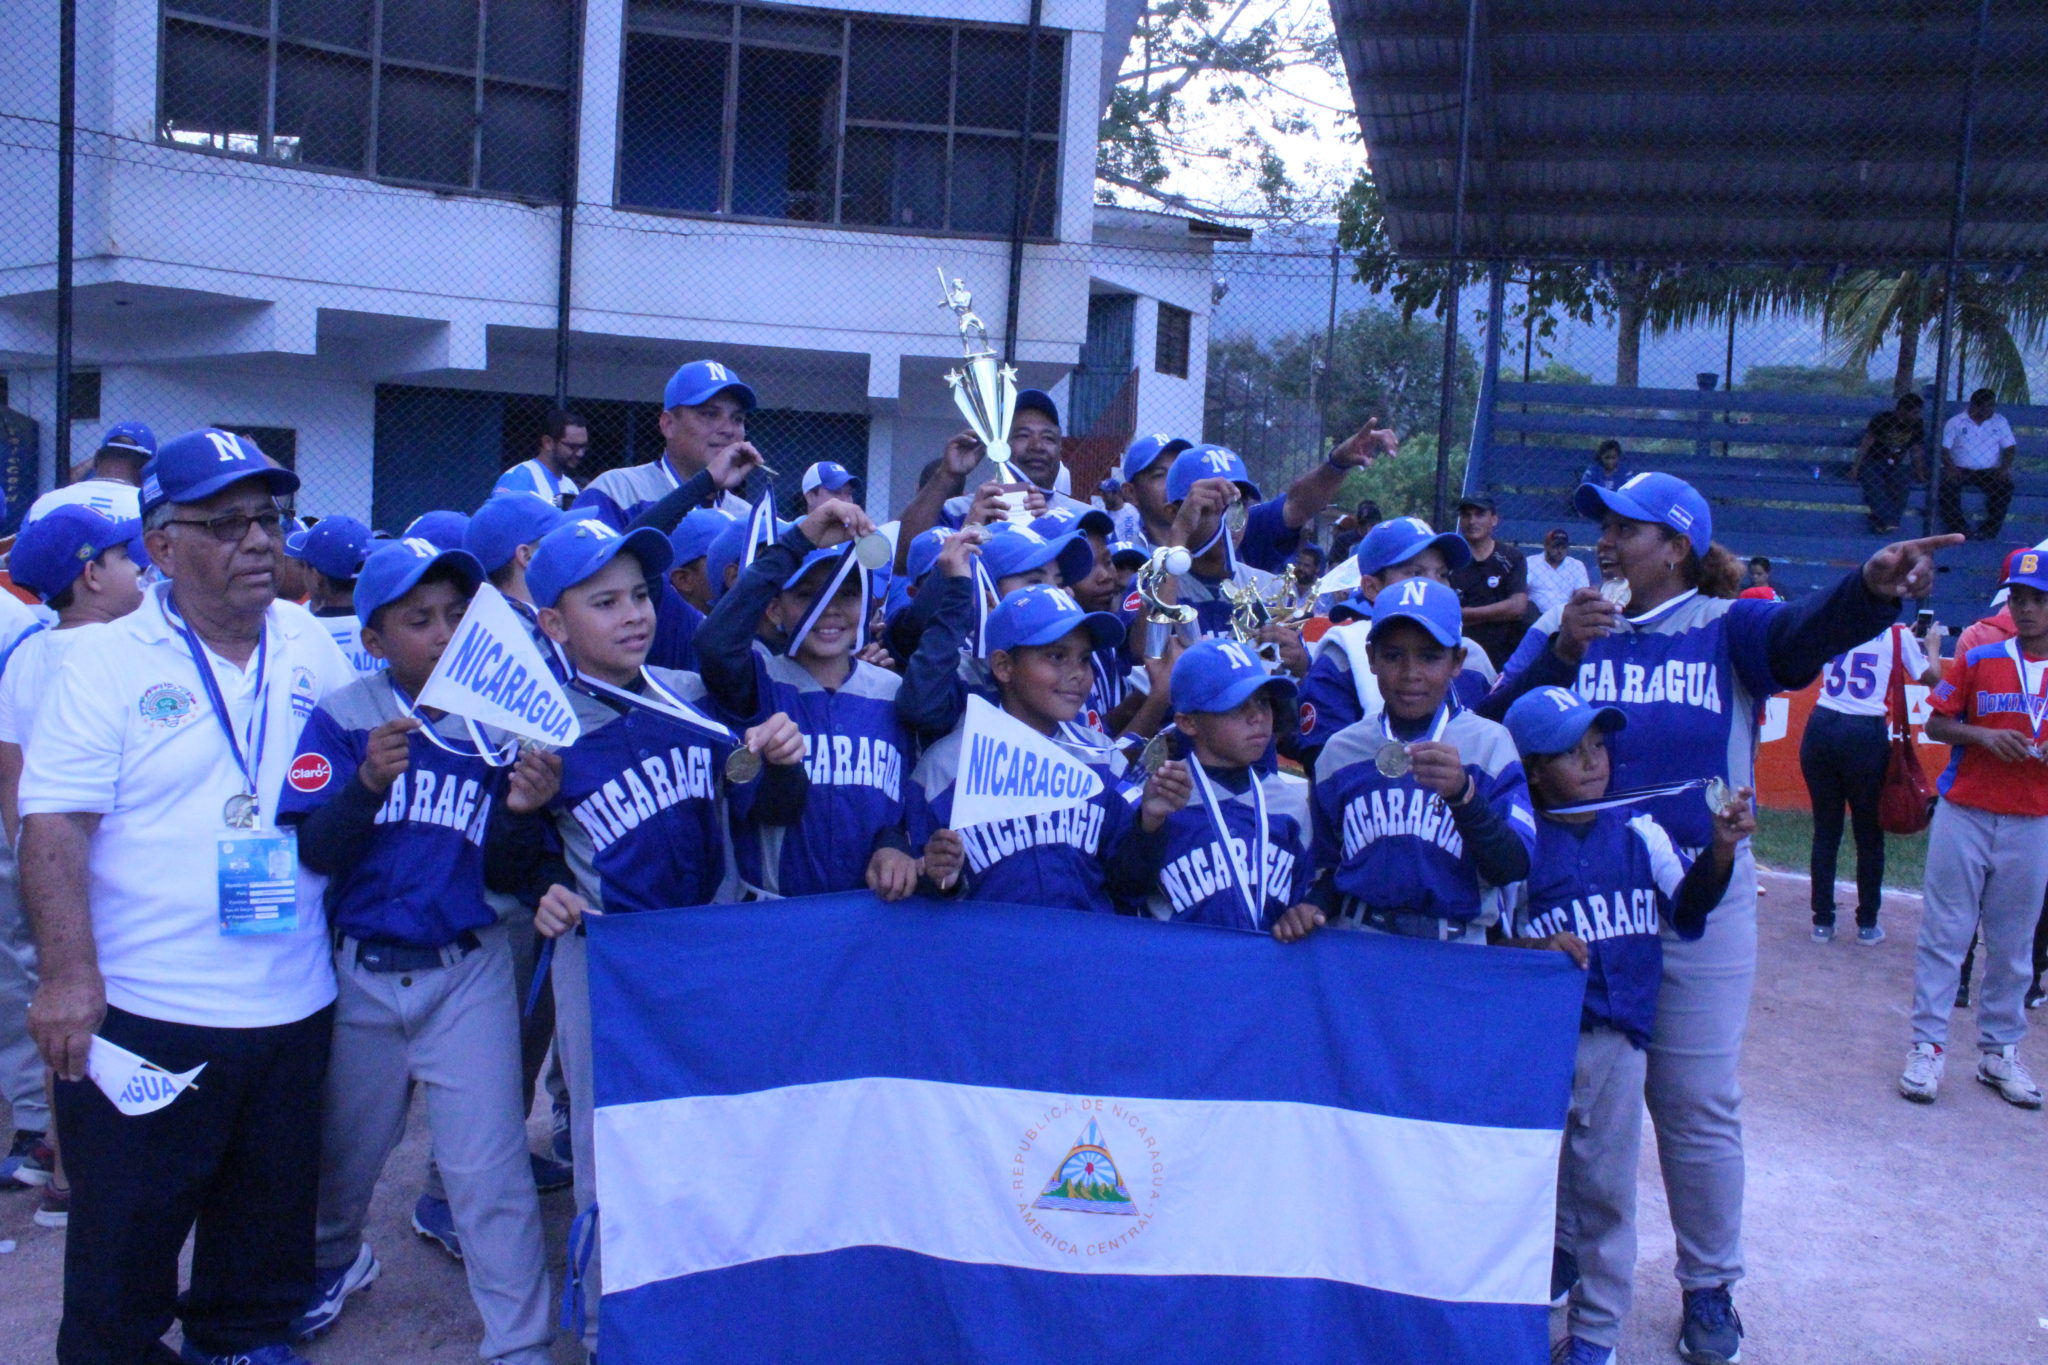 Nicaragua campeón, Honduras cuarto en Panamericano U10 de béisbol